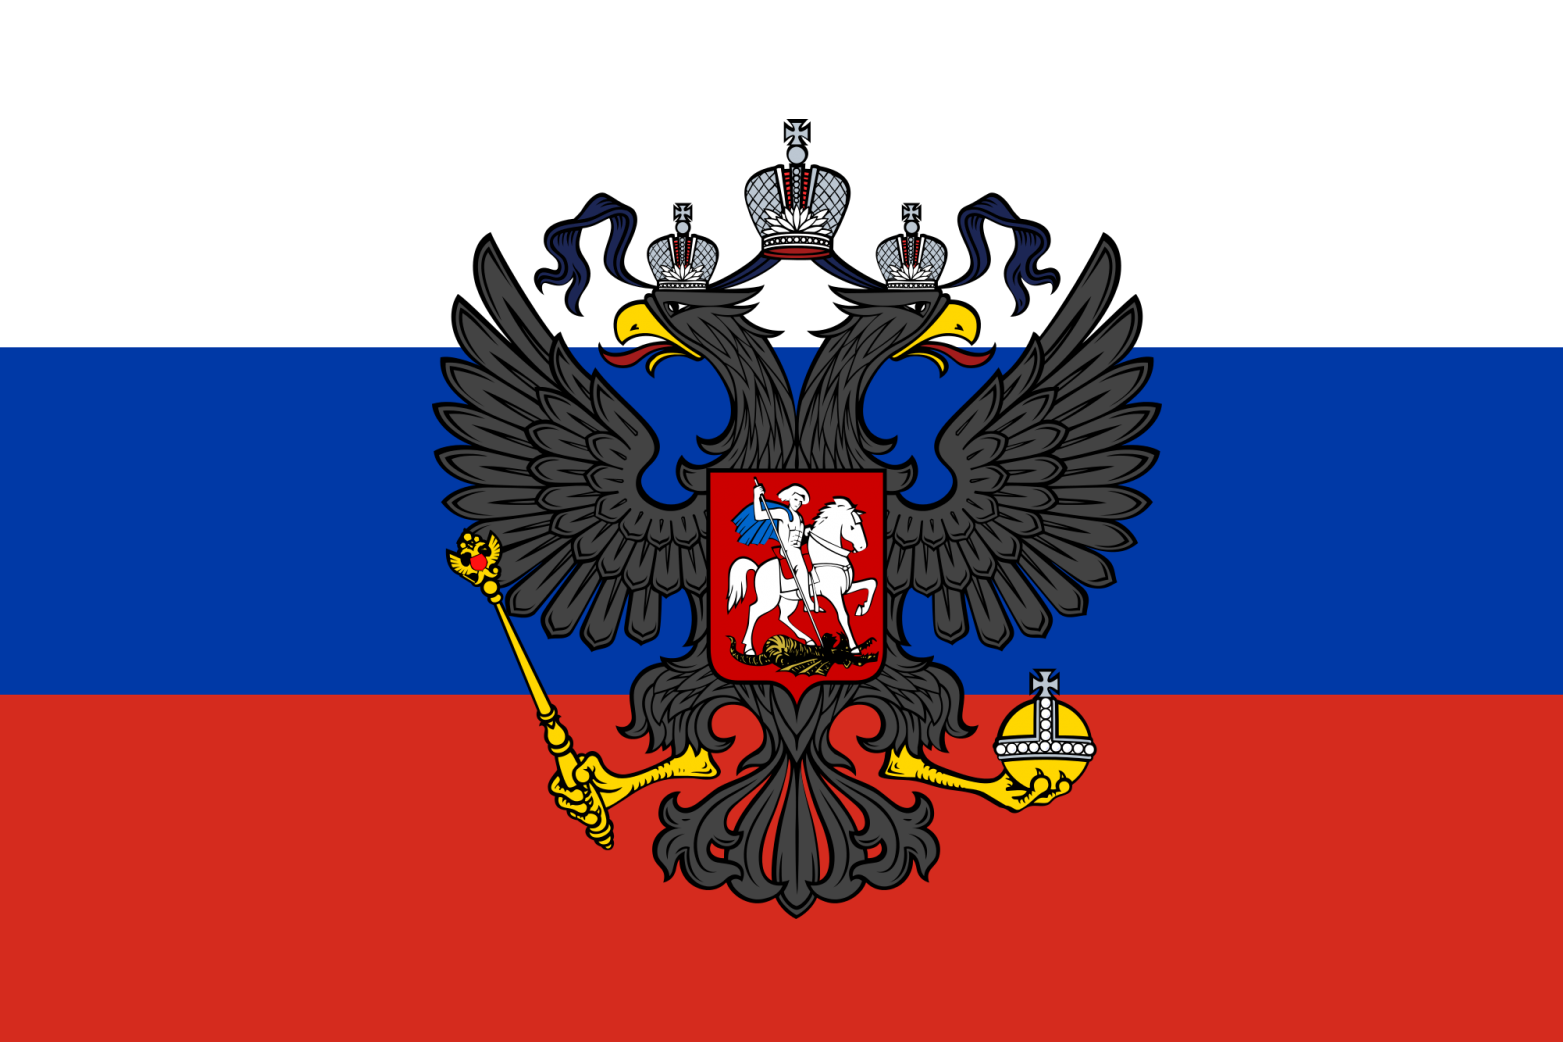 Русский национальный ф